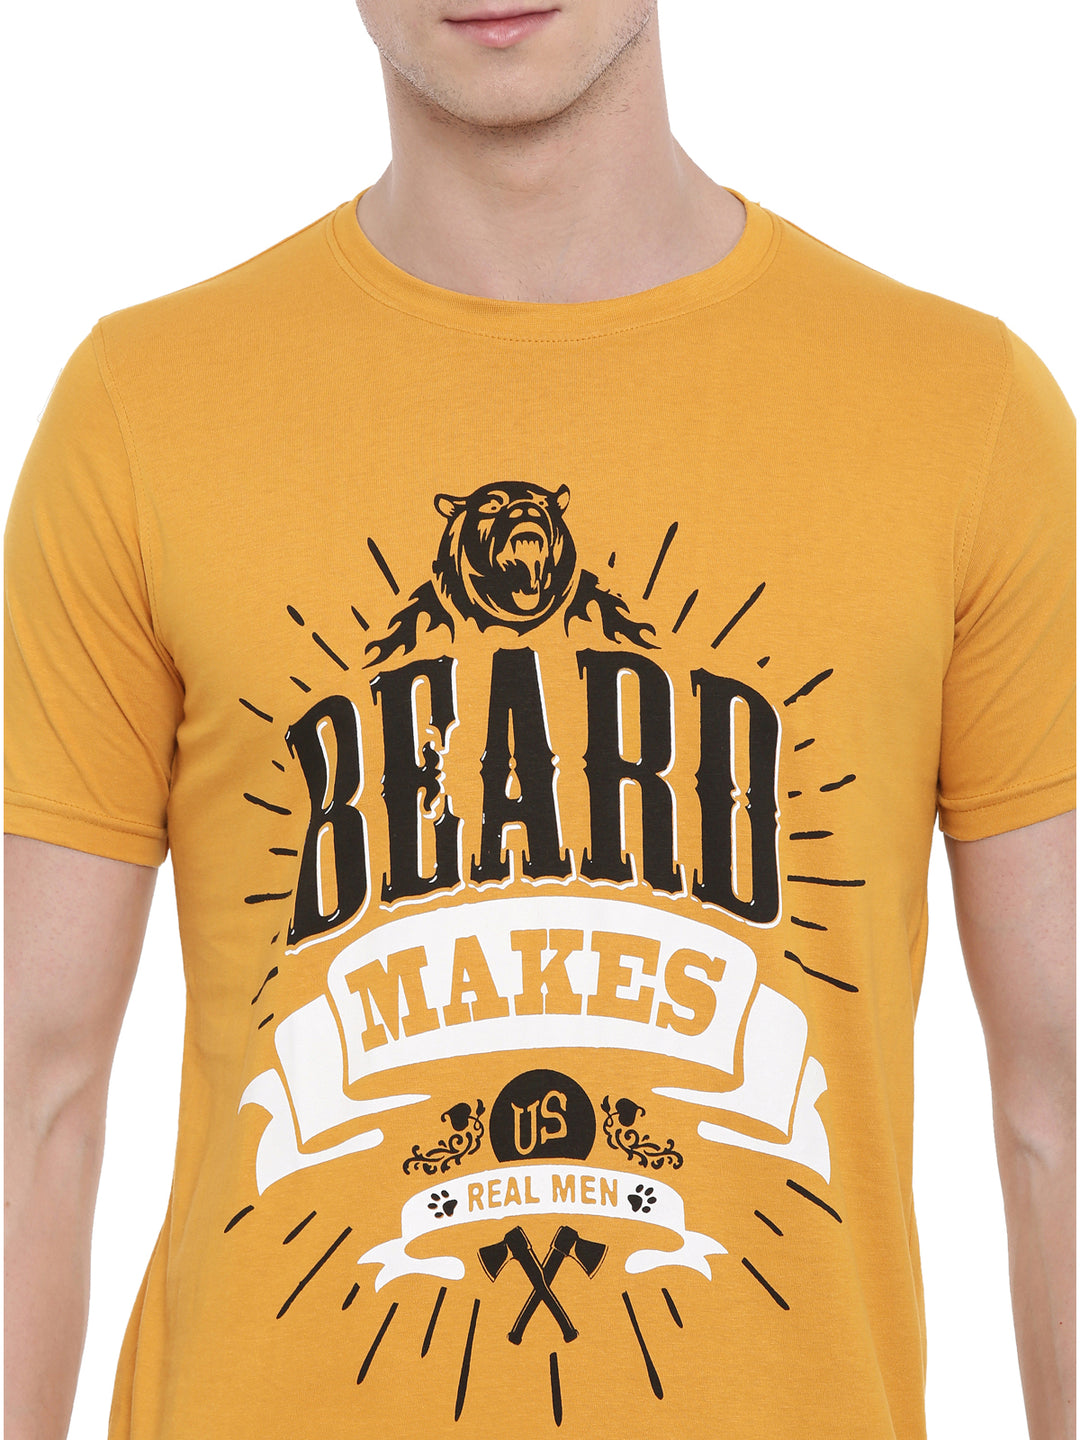 Beard Makes Us Real Man T-Shirt Graphic T-Shirts Bushirt   